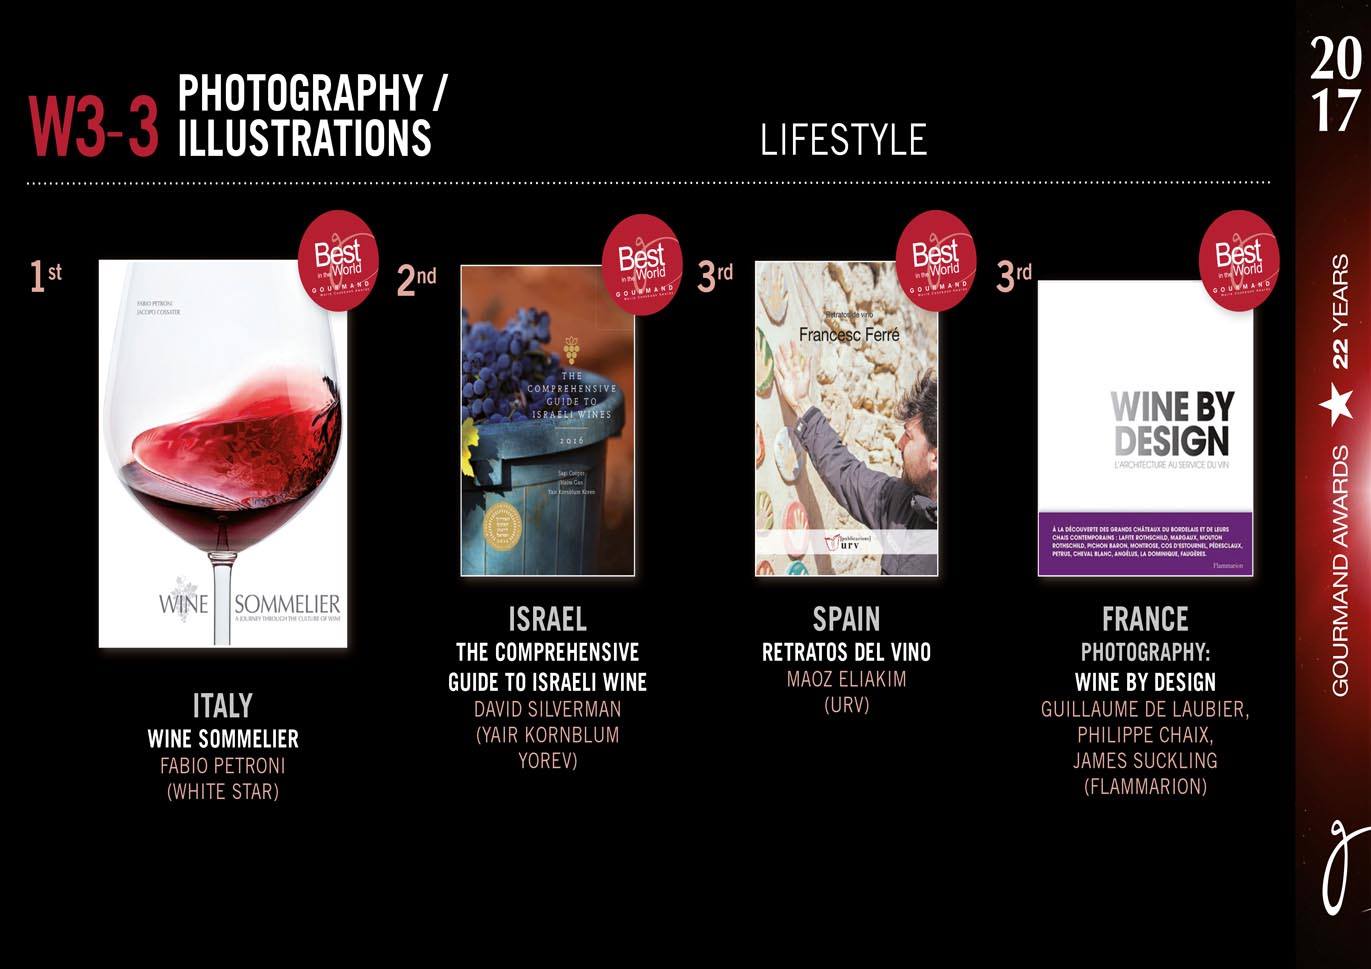 "Retratos de Vino" entre los mejores libros de enología del mundo en los Gourmand Awards